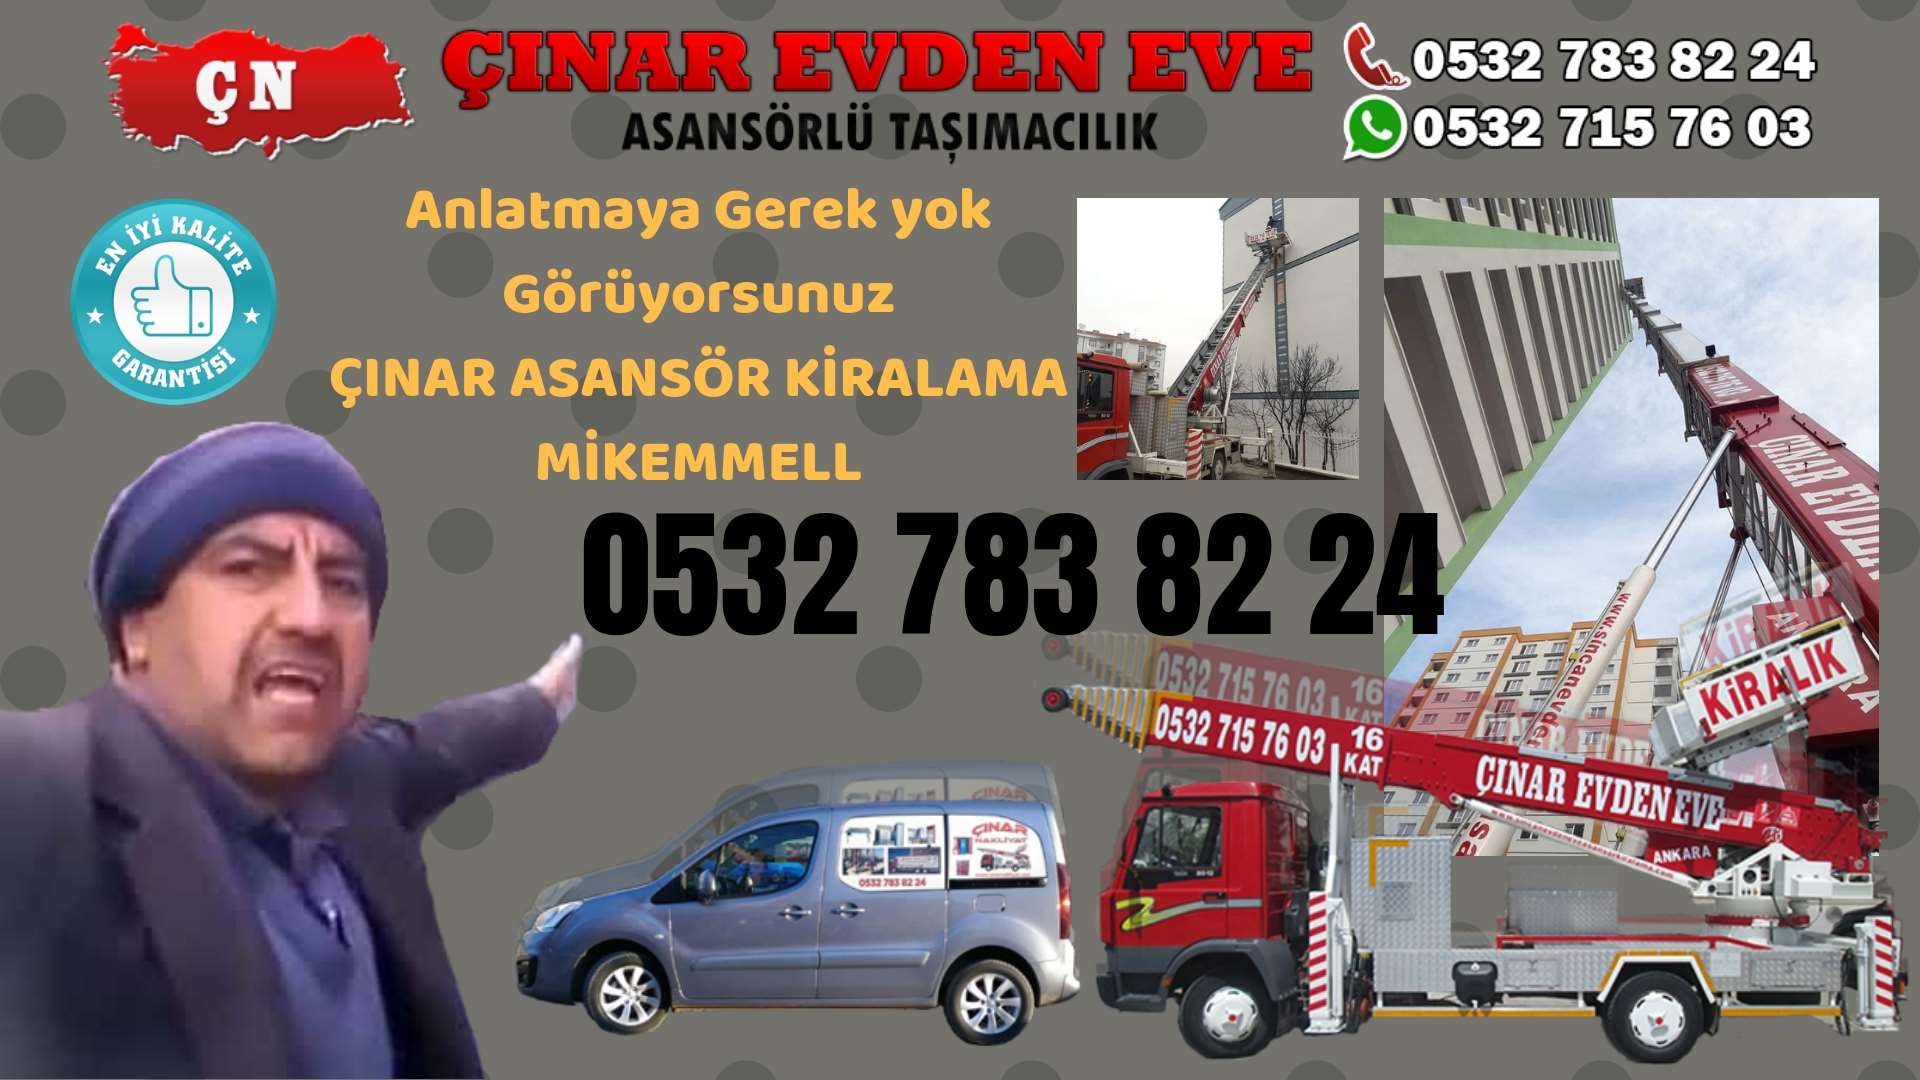 Ankara Evren Ankara asansör kiralama hizmeti sizlere başta kalite ve maddi acıdan tasarruf 0532 715 76 03